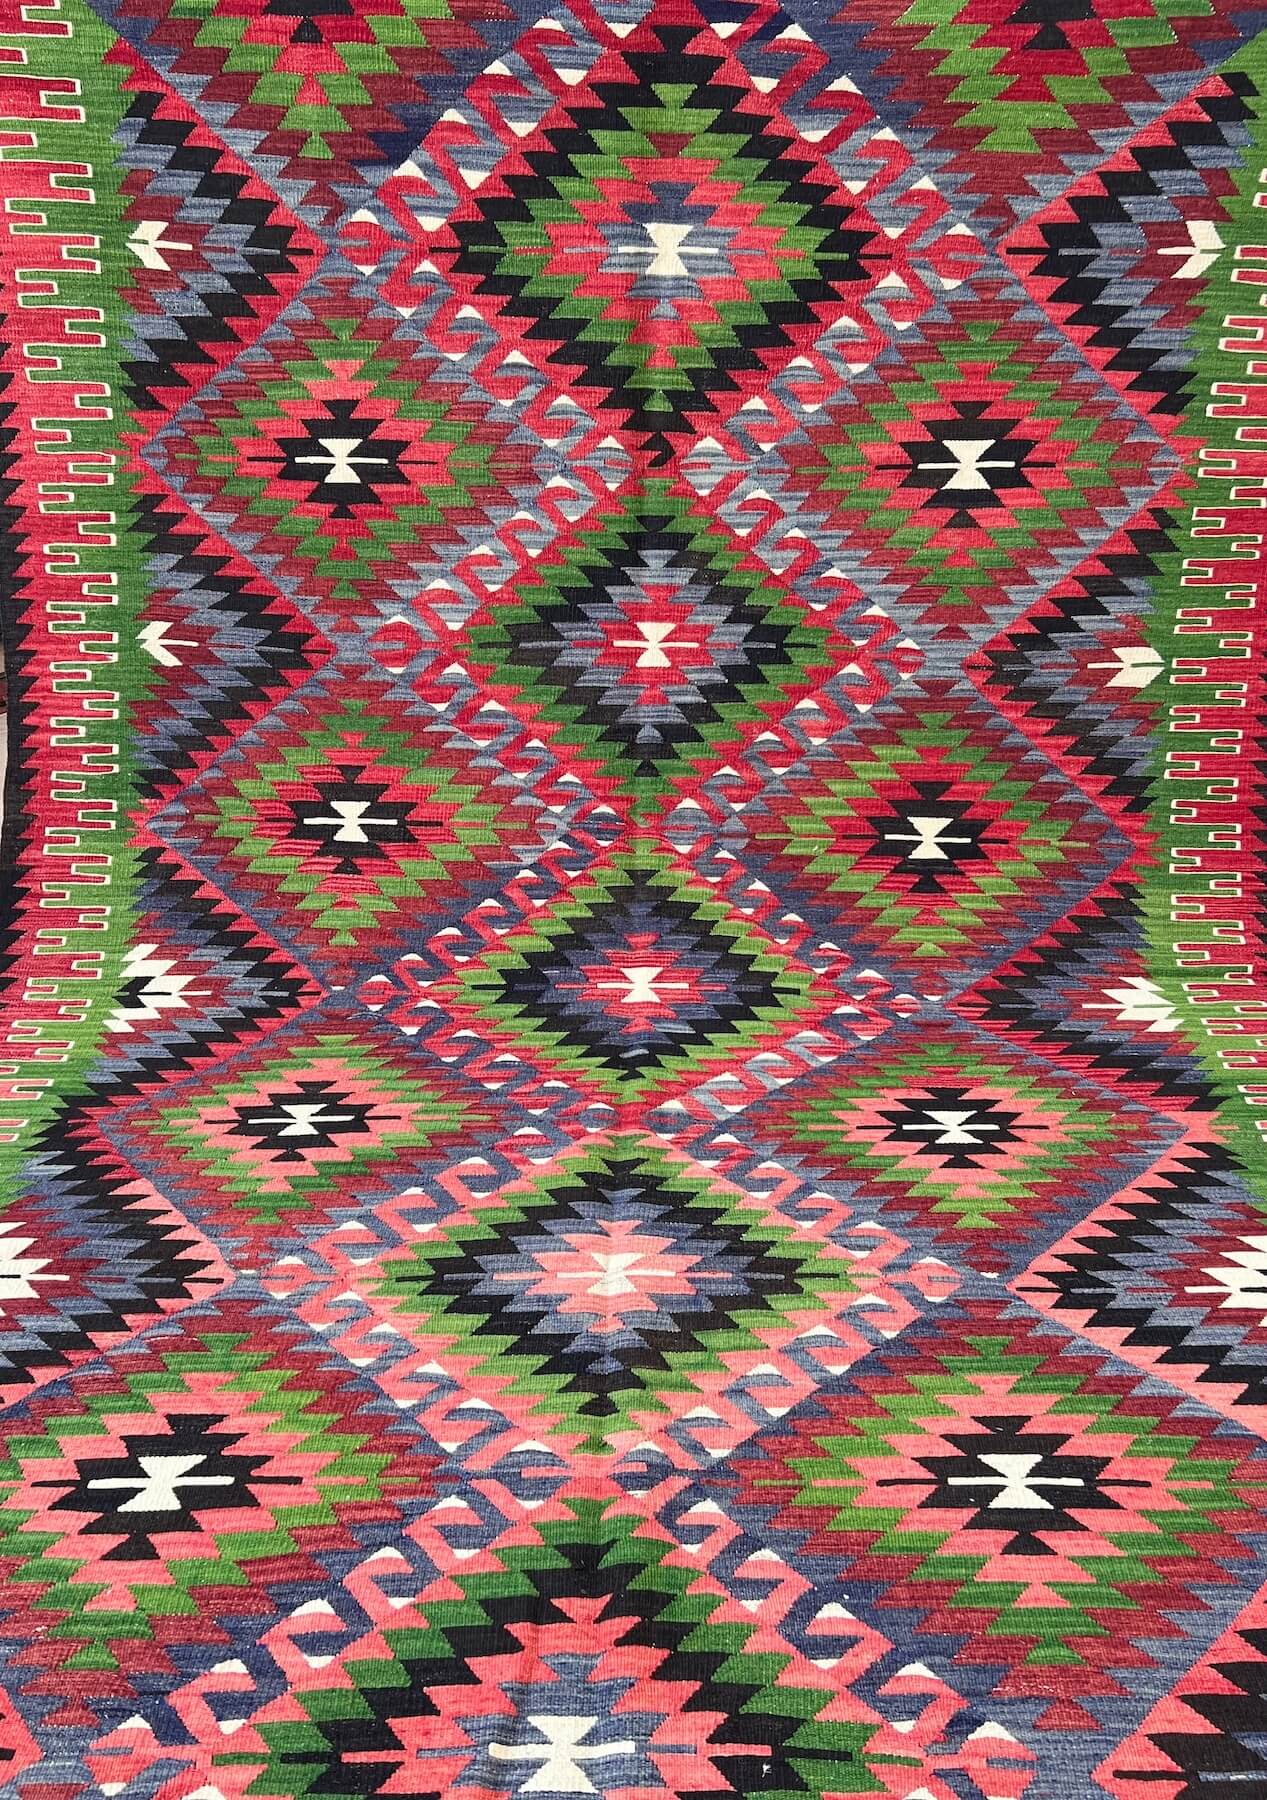 Mckayla - Multi Color Turkish Kilim Rug - kudenrugs